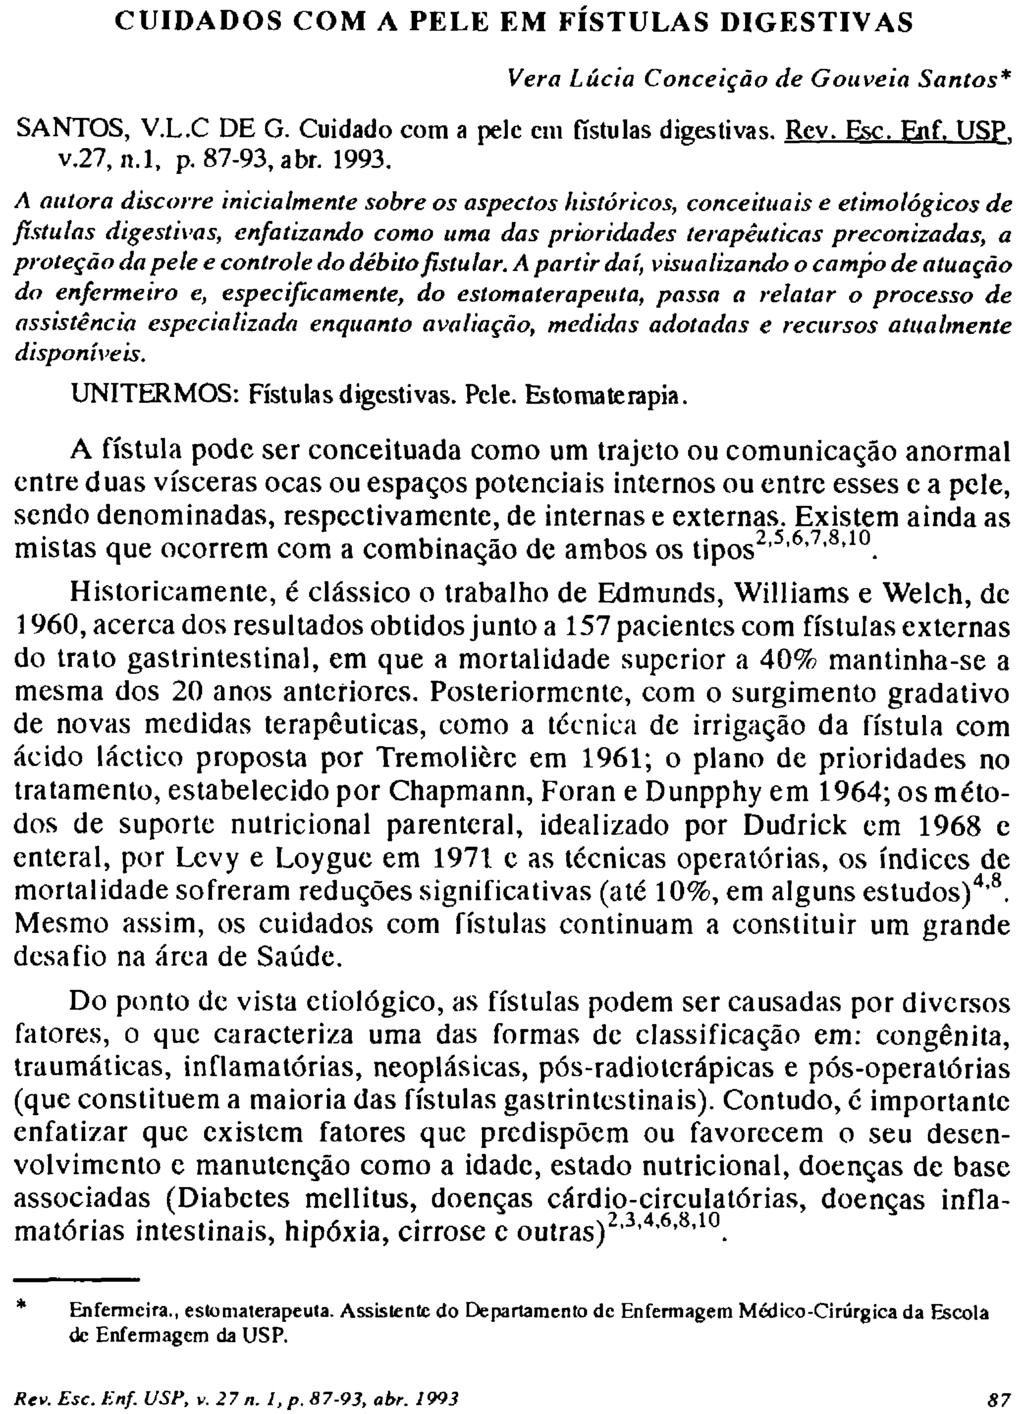 CUIDADOS COM A PELE EM FISTULAS DIGESTIVAS Vera Lúcia Conceição de Gouveia Santos* SANTOS, V.L.C DE G. Cuidado cora a pele cm fístulas digestivas. Rcv. Esc. Enf. USP T v.27, n.l, p. 87-93, abr. 1993.